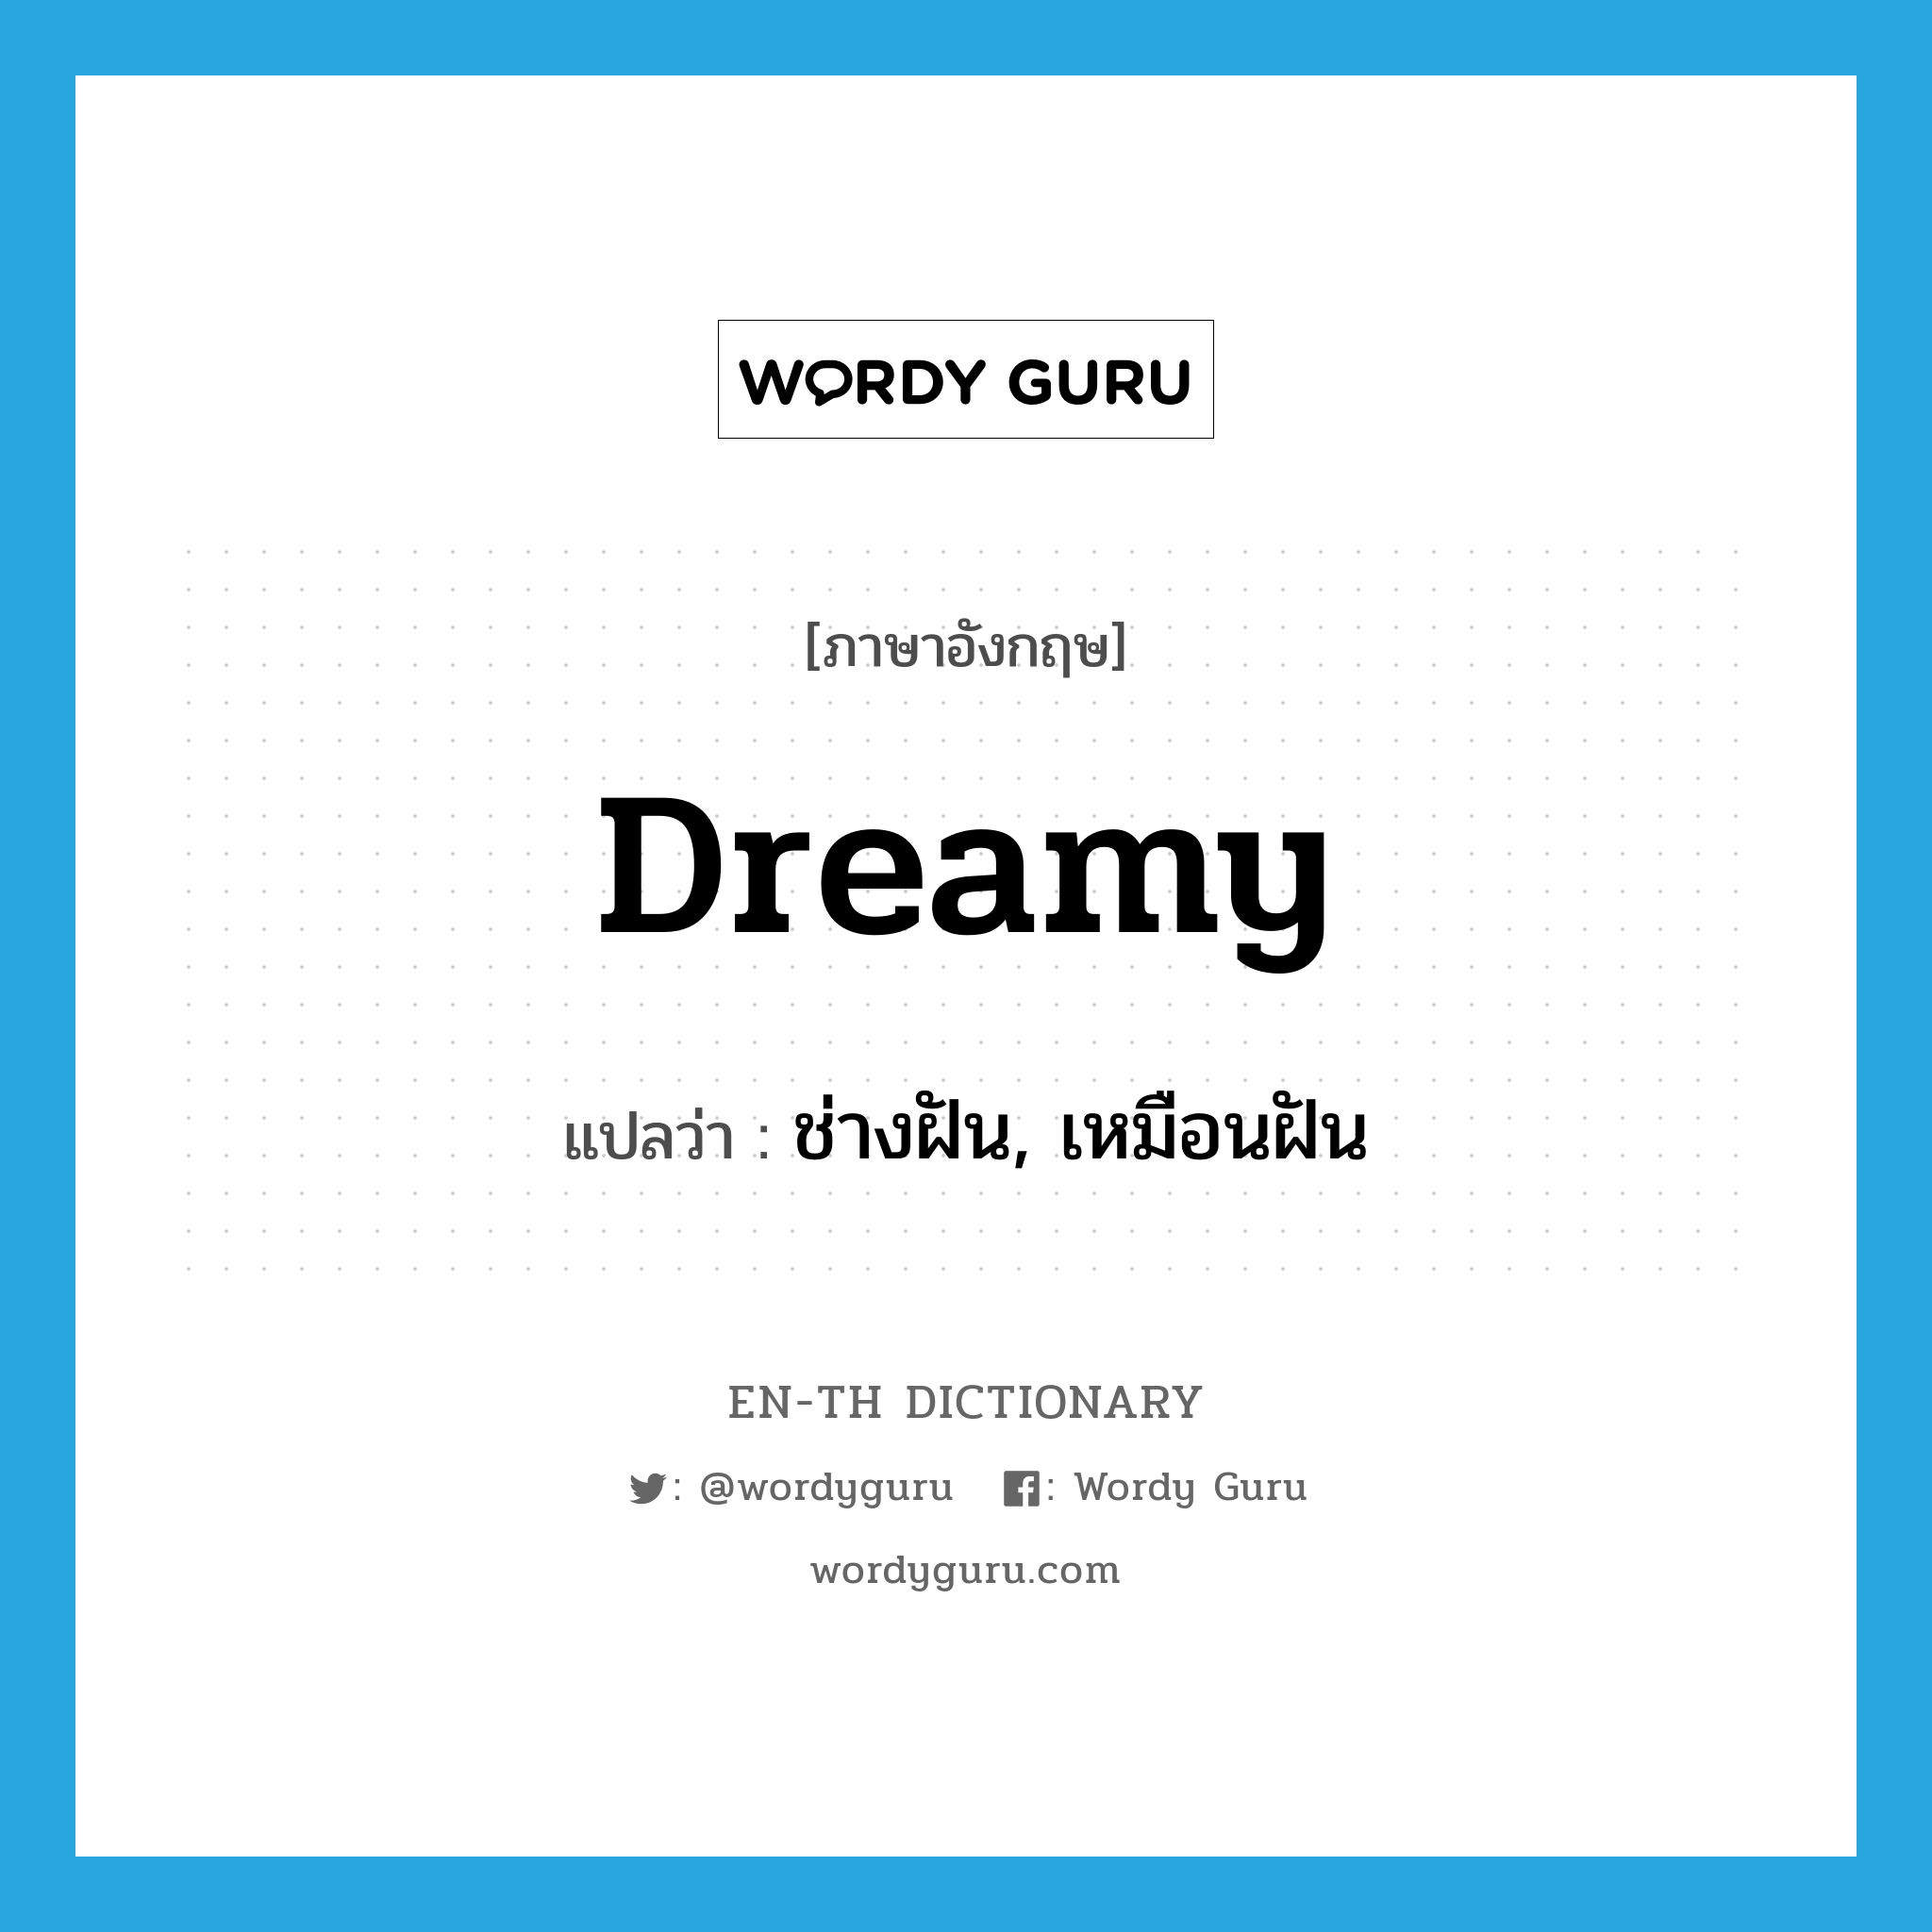 ช่างฝัน, เหมือนฝัน ภาษาอังกฤษ?, คำศัพท์ภาษาอังกฤษ ช่างฝัน, เหมือนฝัน แปลว่า dreamy ประเภท ADJ หมวด ADJ